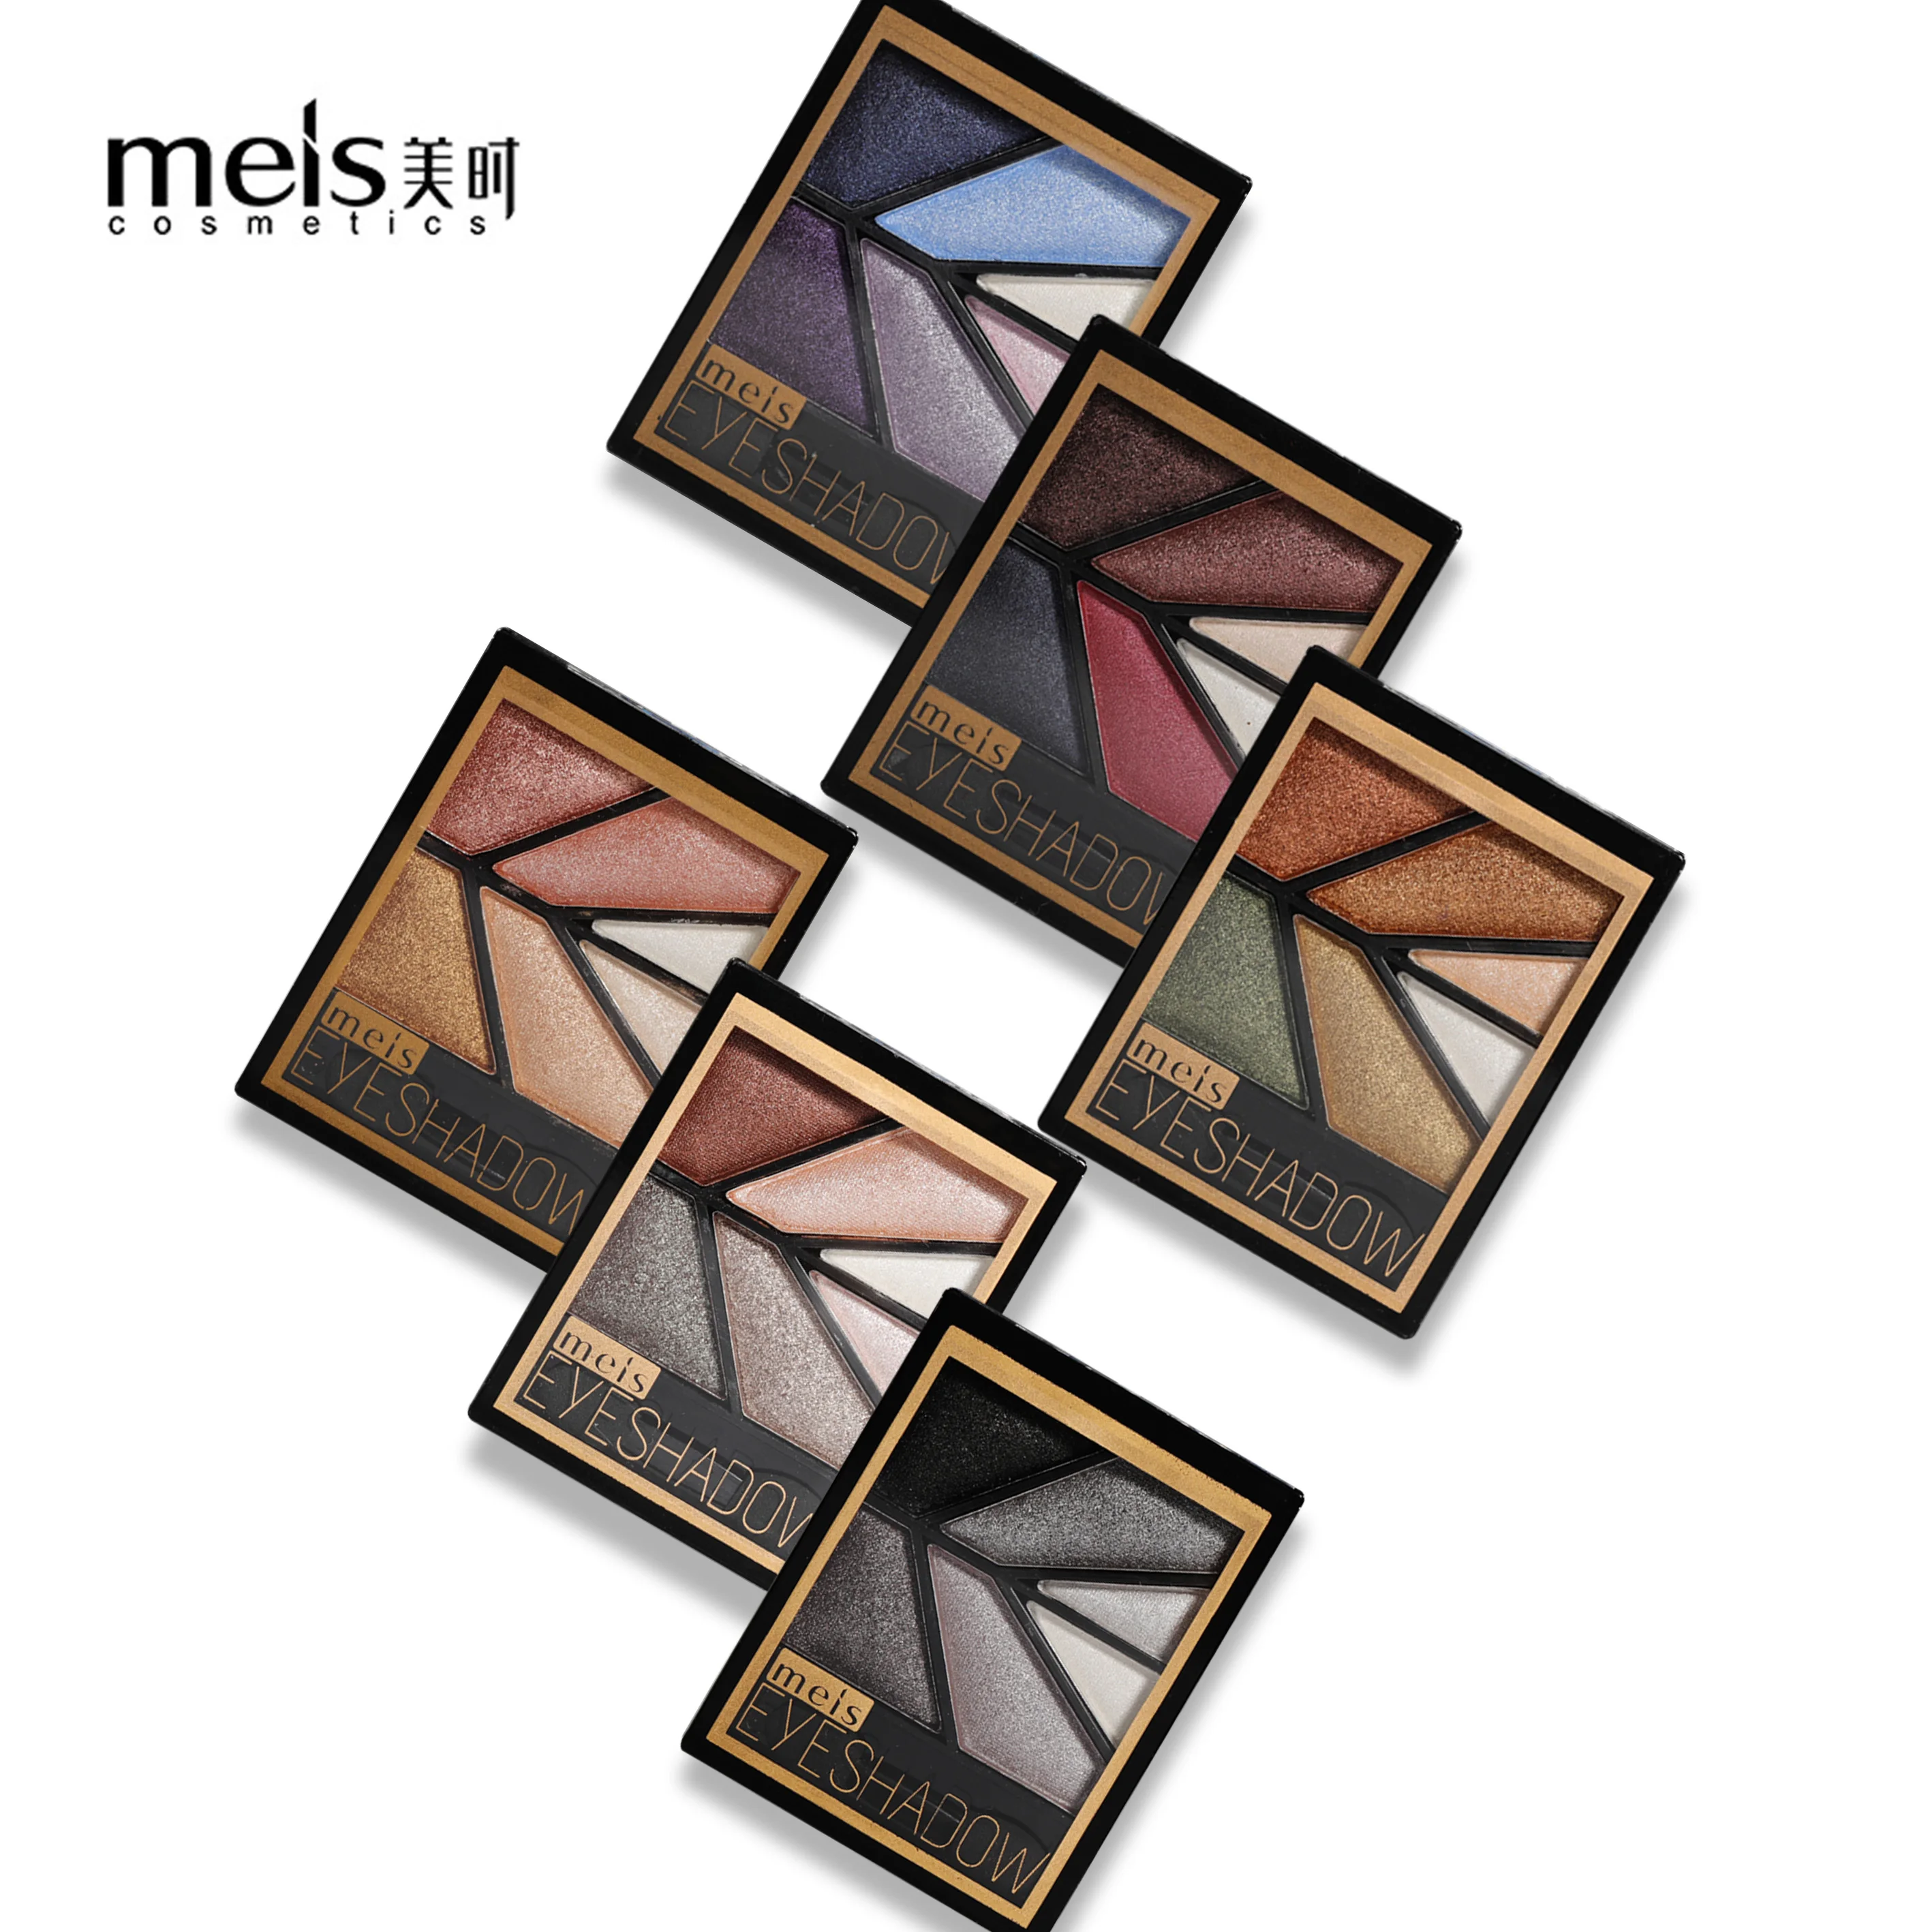 MEIS Новое поступление очаровательные тени для век 6 цветов матовые тени для век макияж Палитра мерцающие тени для век Пудра модный цвет